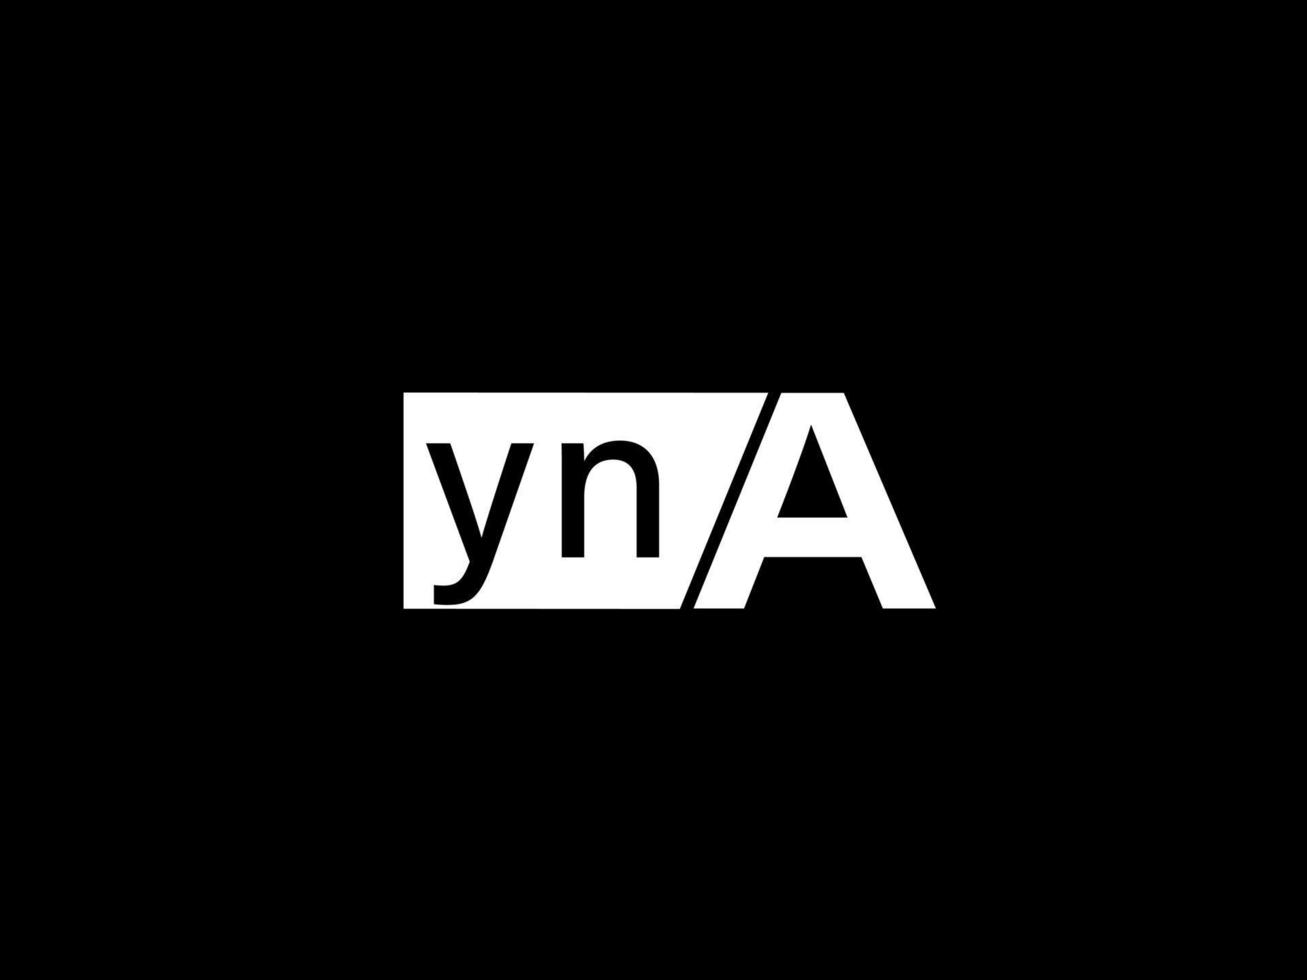 yna-Logo und Grafikdesign Vektorgrafiken, Symbole isoliert auf schwarzem Hintergrund vektor